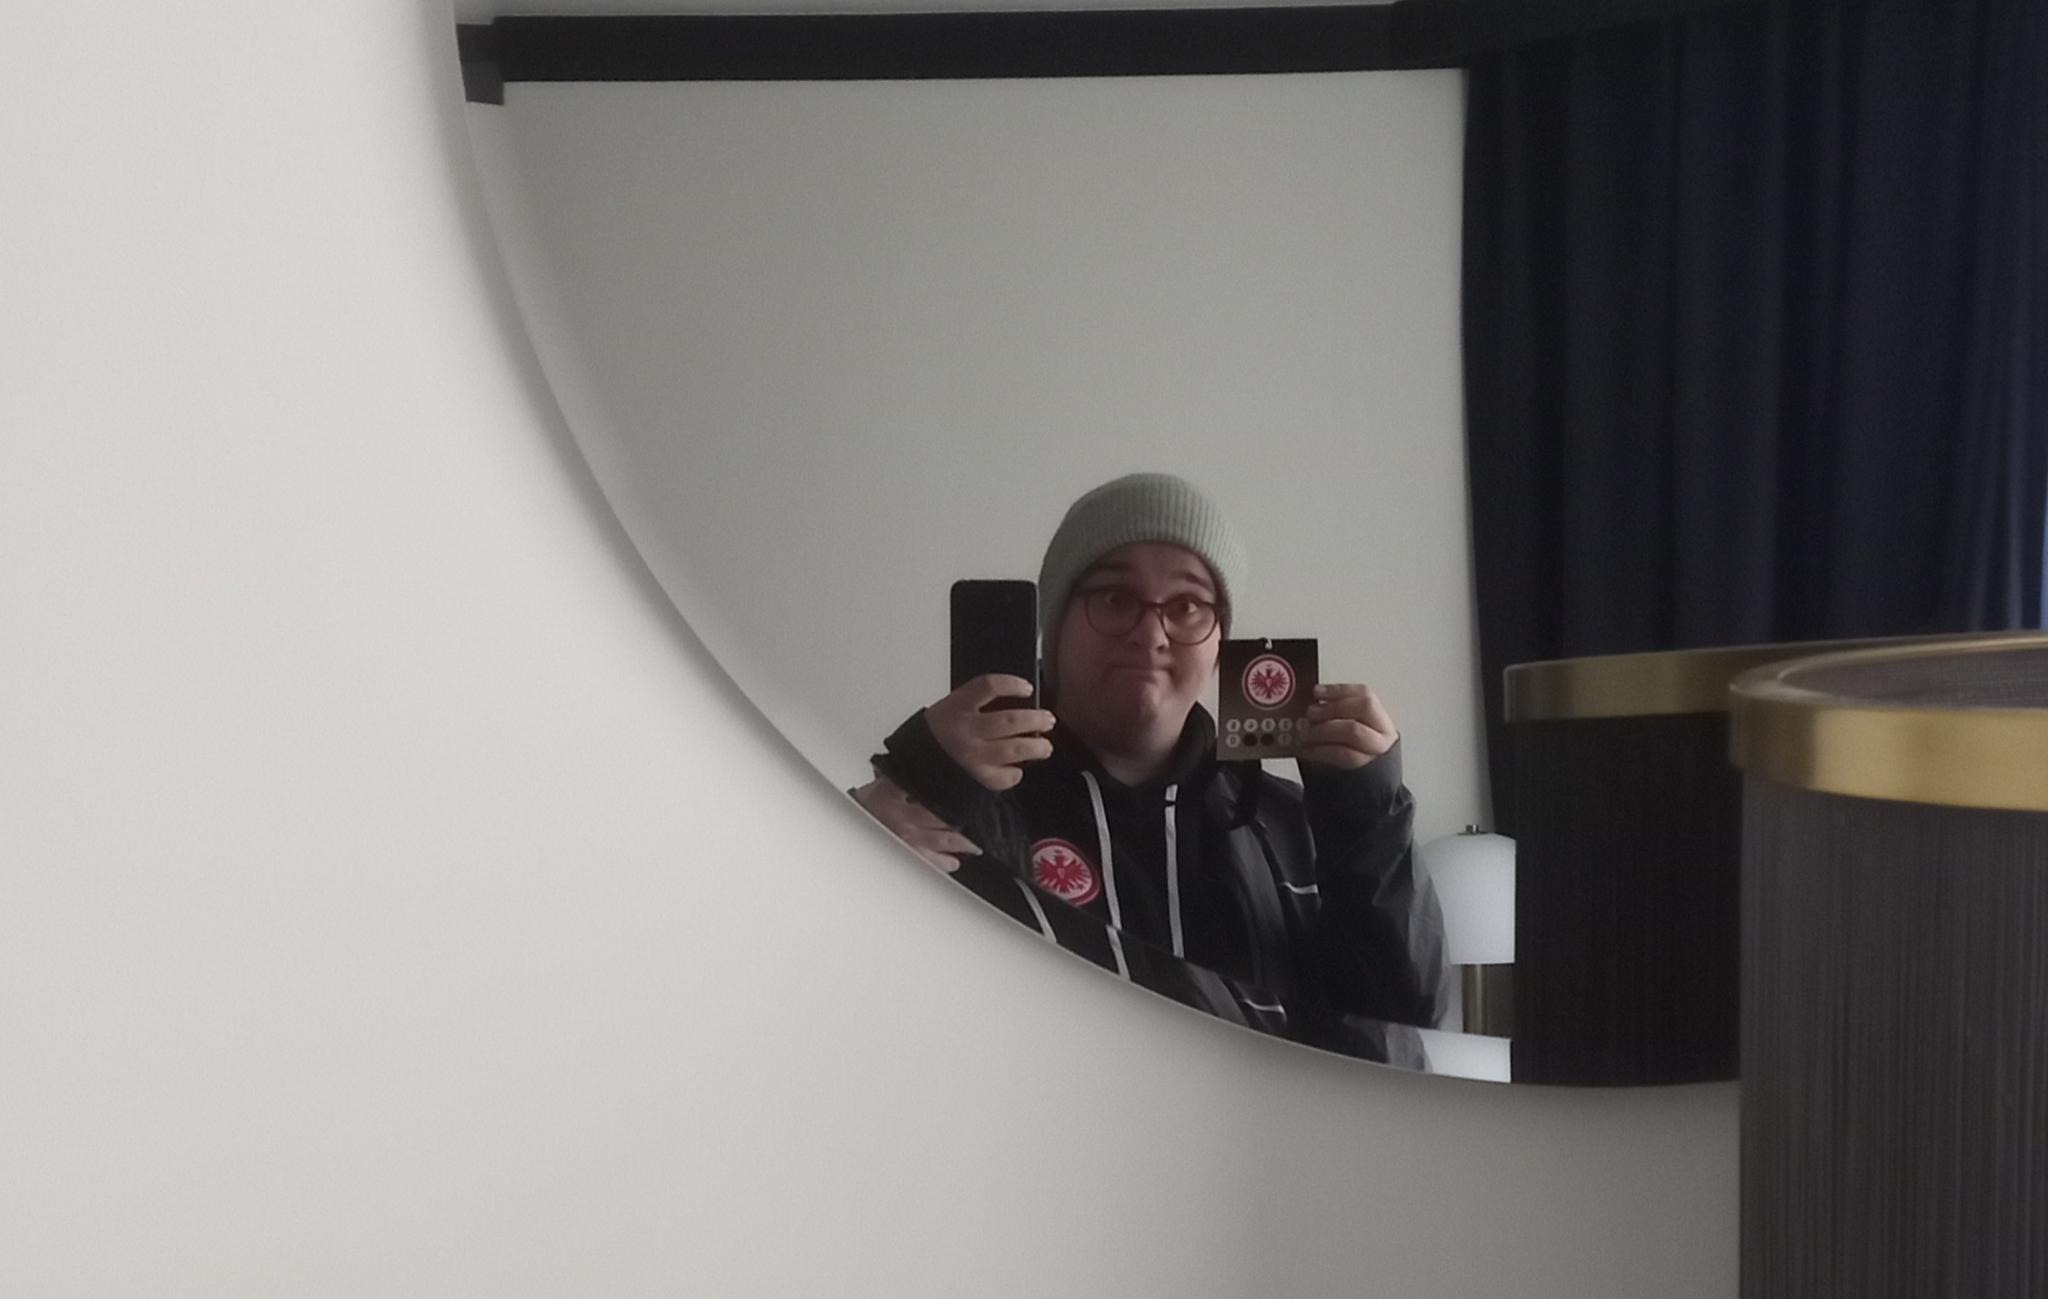 Spiegelselfie in einem Prager Hotelzimmer, ich trage Dienstkleidung und halte meine Akkreditierung hoch